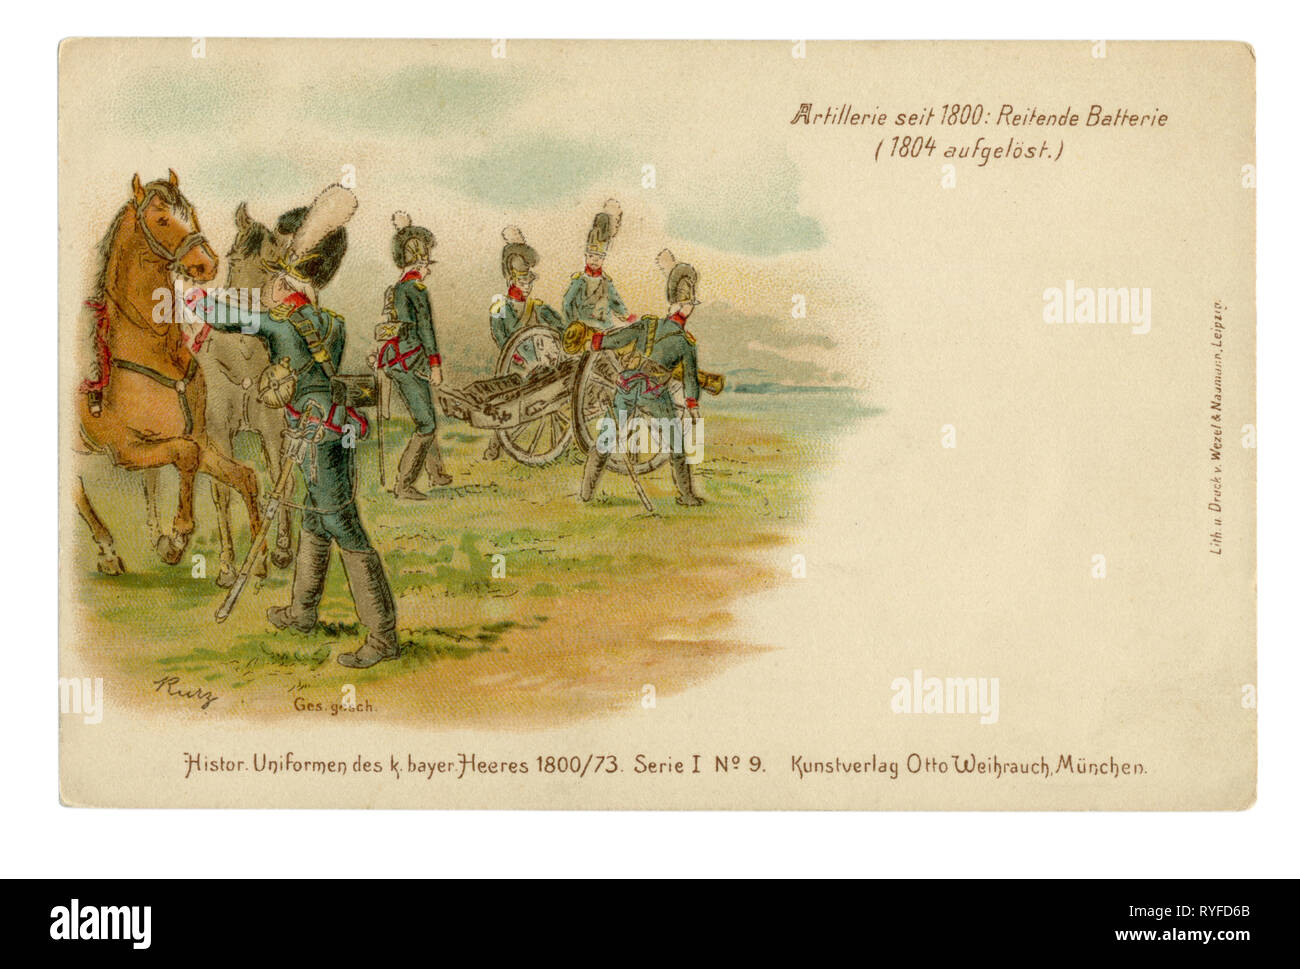 Deutsche Historische Postkarte: Lithographie des späten 19. Jahrhunderts. Artillerie Batterie stellt die Pistole auf die Anschlagposition, 1815, Napoleonische Kriege Stockfoto